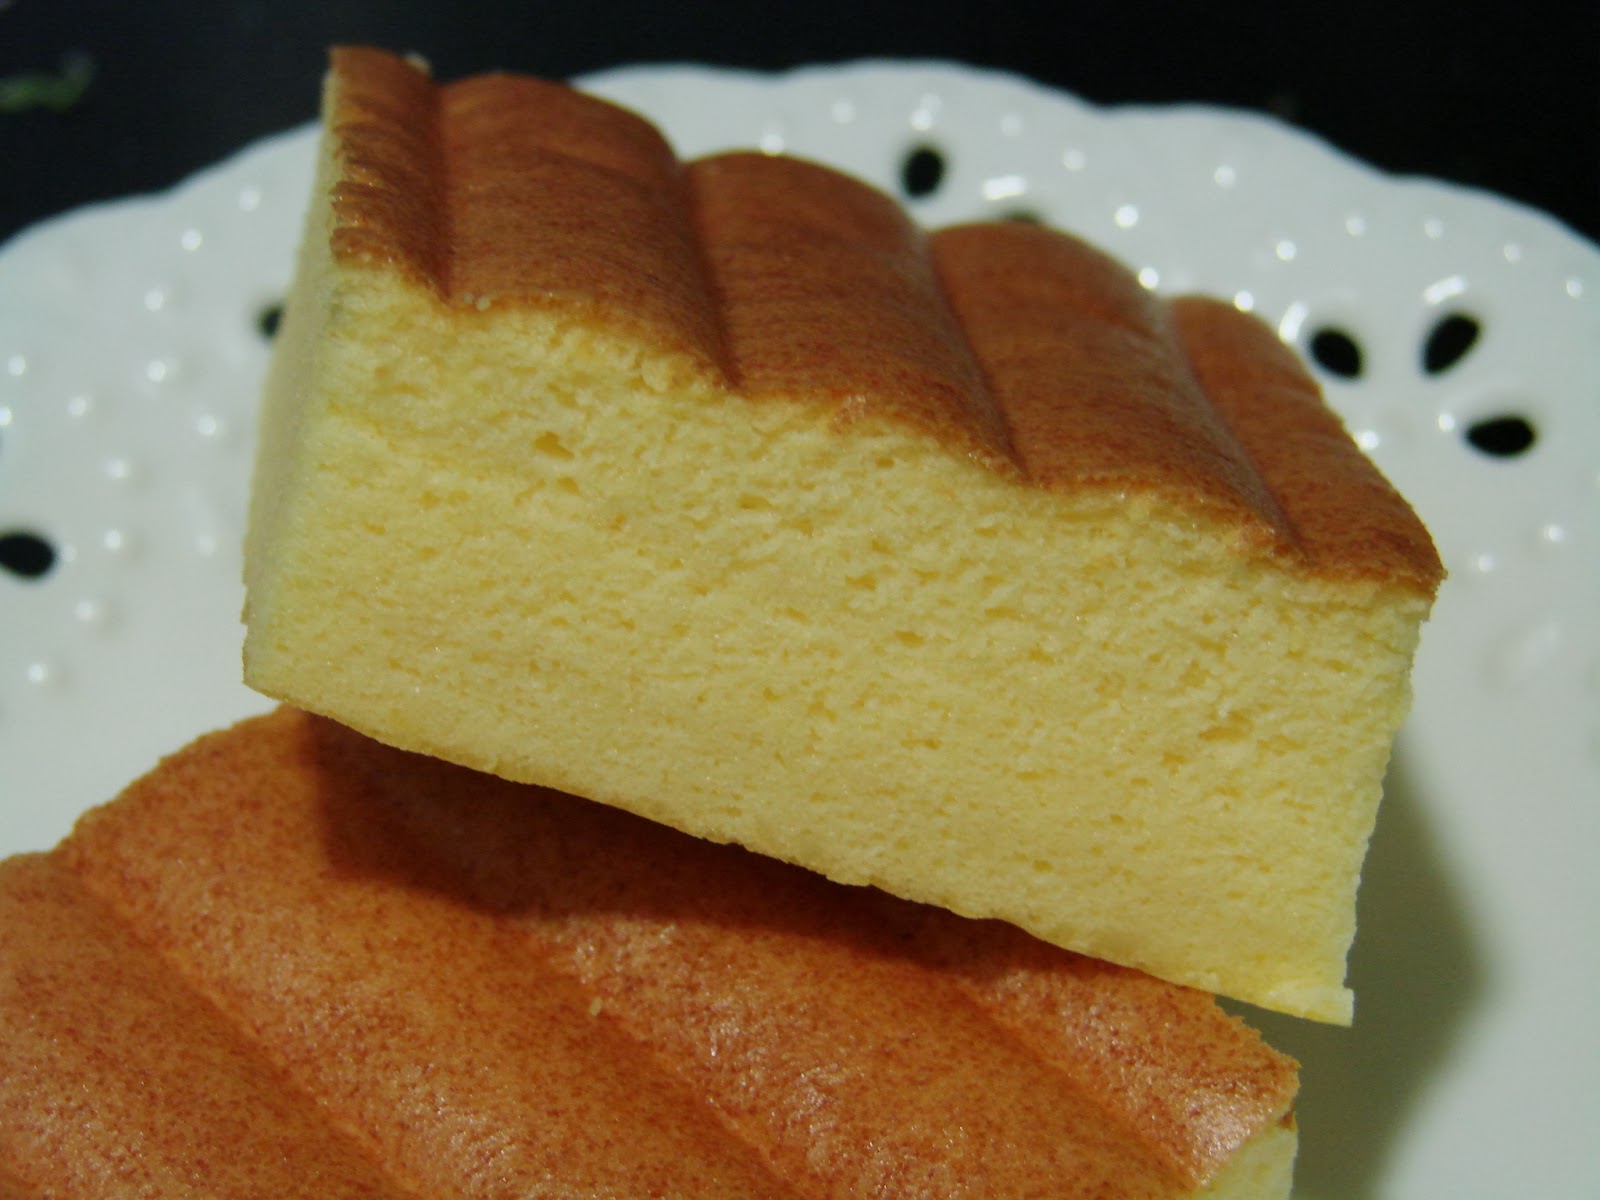 爱厨房的幸福之味: 鲜橙棉花蛋糕 Orange Cotton Cake